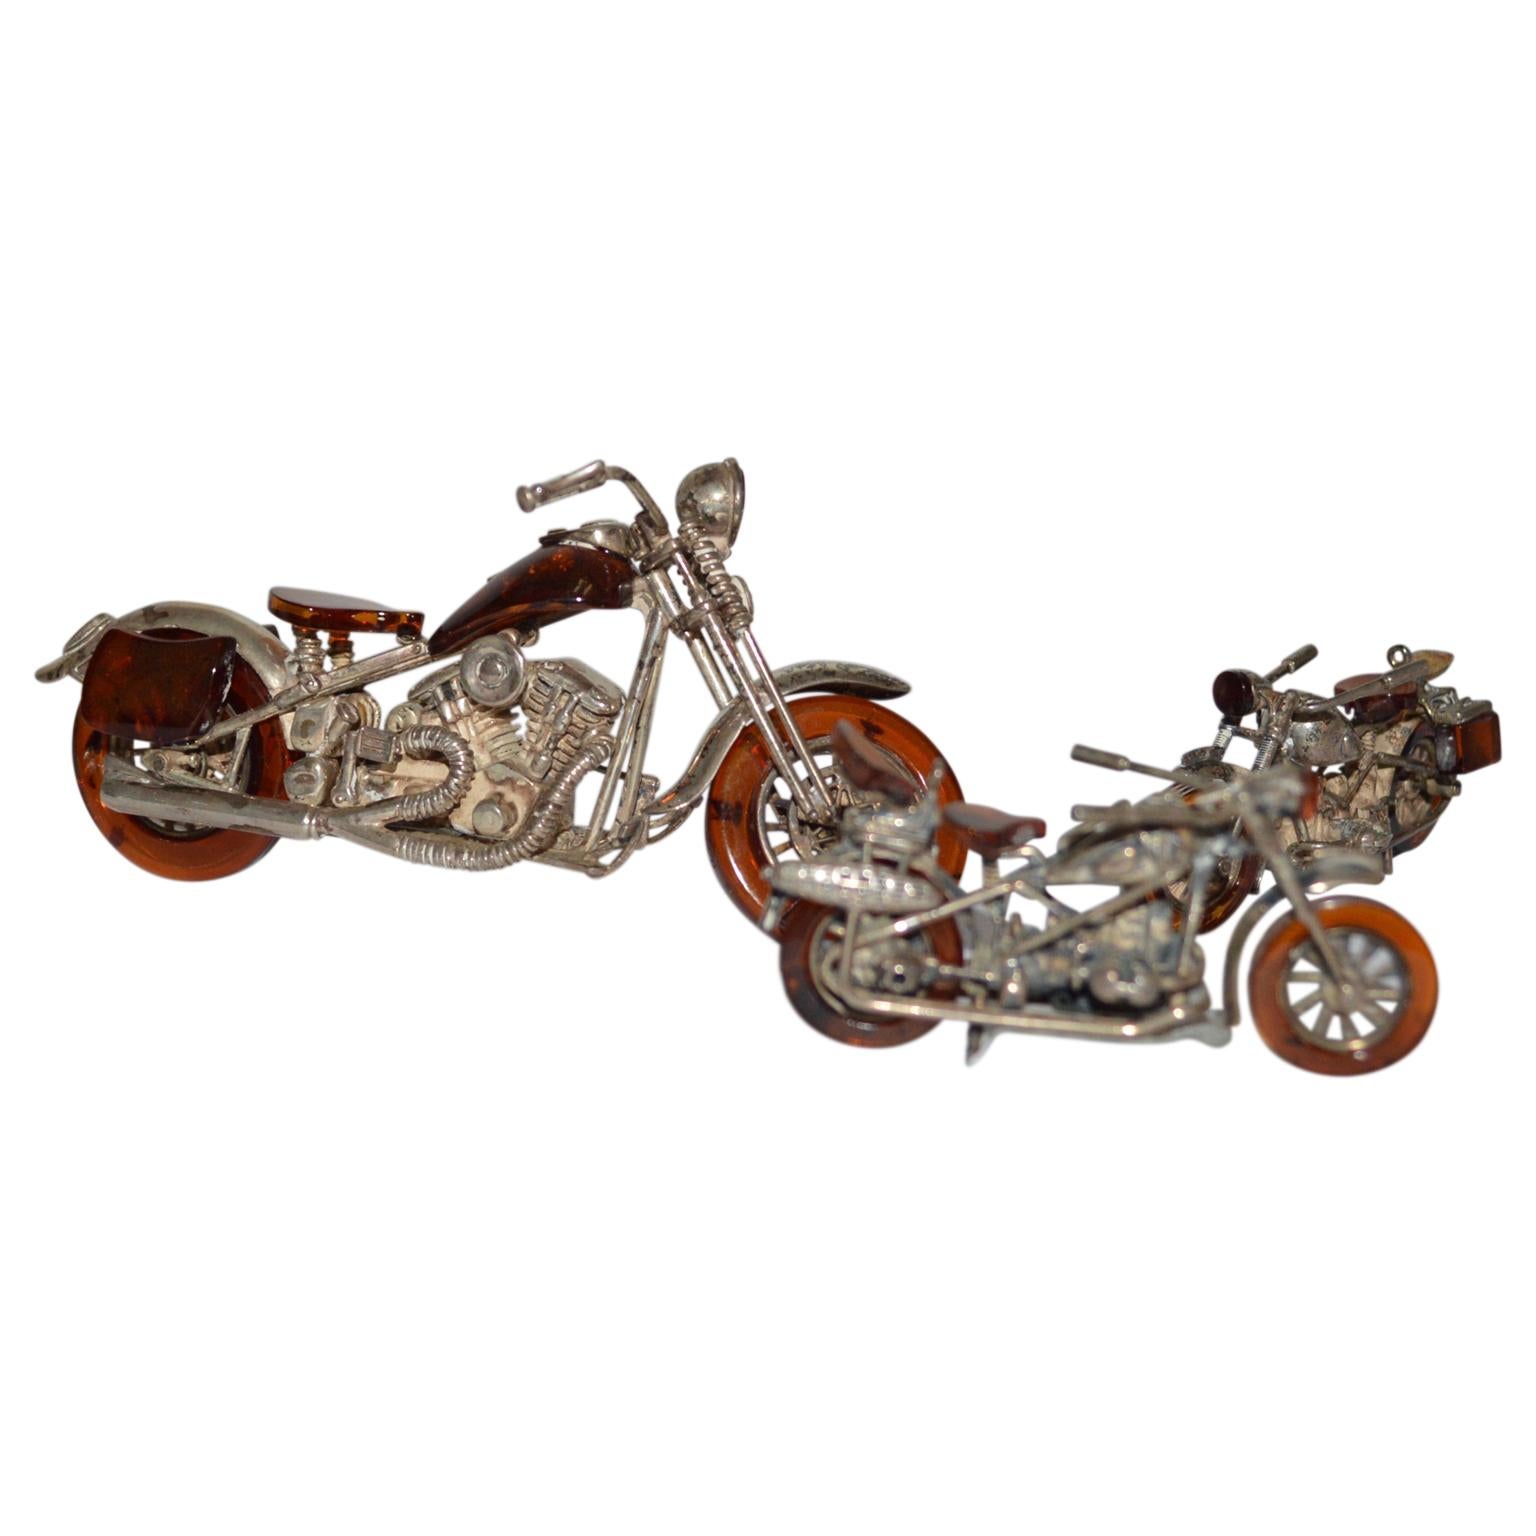 Satz von 3 Miniatur-Motorrädern im Harley Davidson Stil in Bernstein und Silber
925er Silber gestempelt.